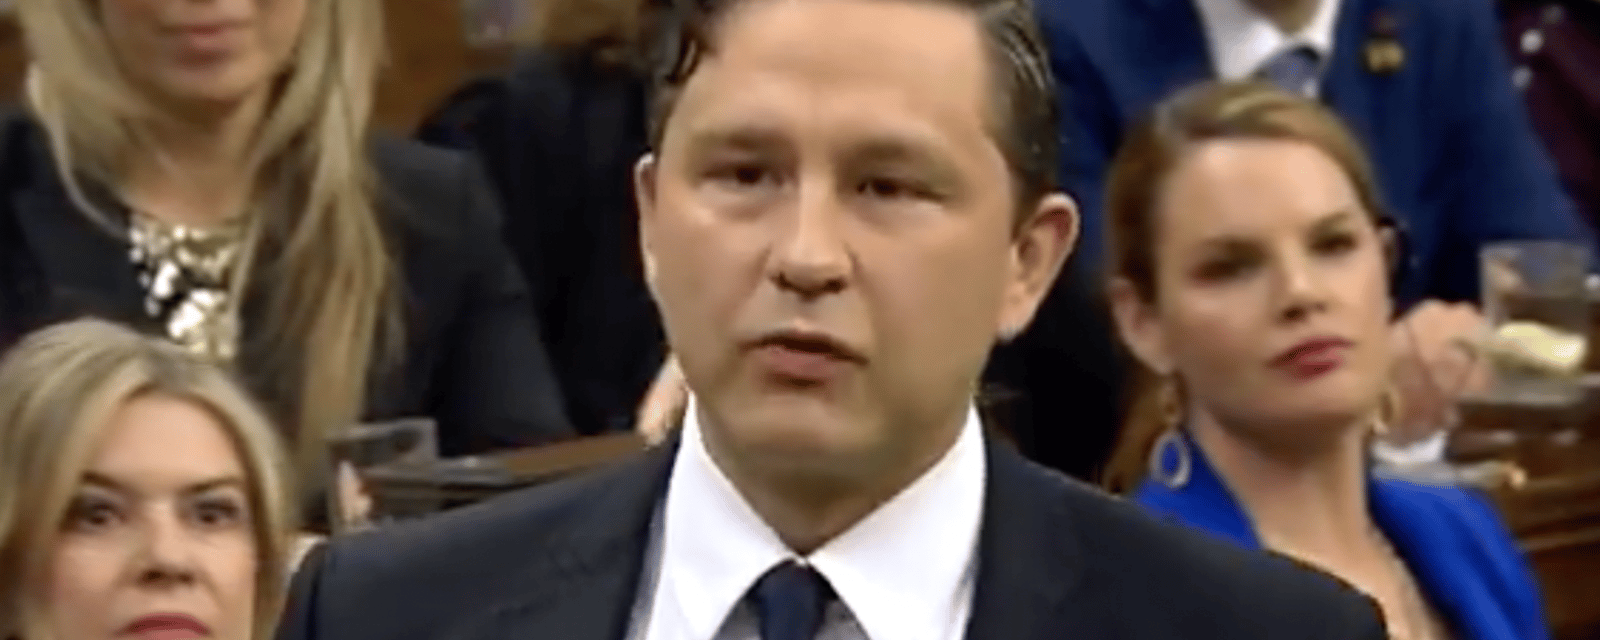 Pierre Poilievre expulsé de la Chambre des communes après avoir insulté Justin Trudeau